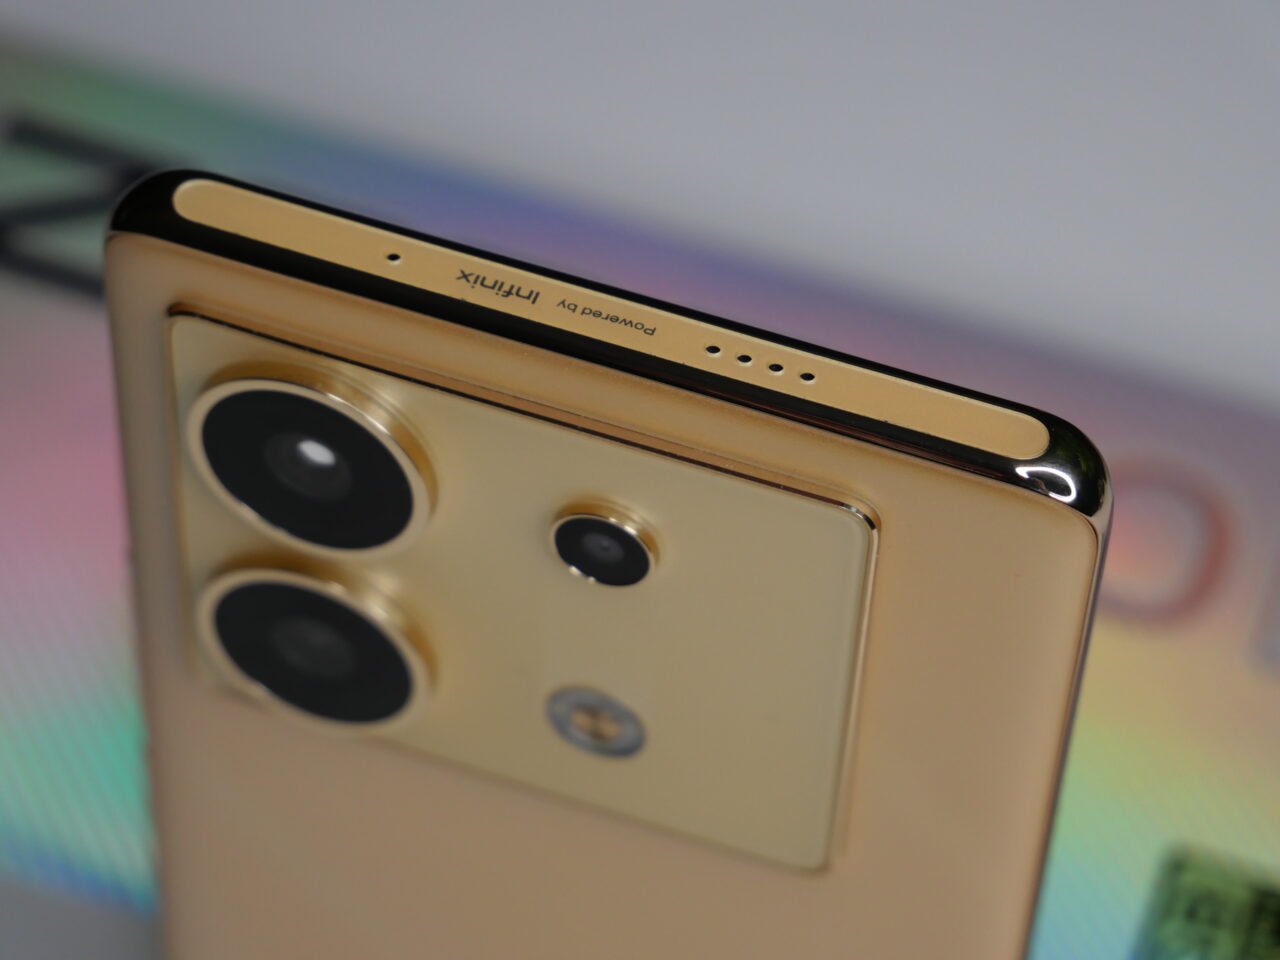 Zbliżenie na górną część złotego smartfona z potrójnym aparatem i logo producenta, przeciw tęczowemu tłu.